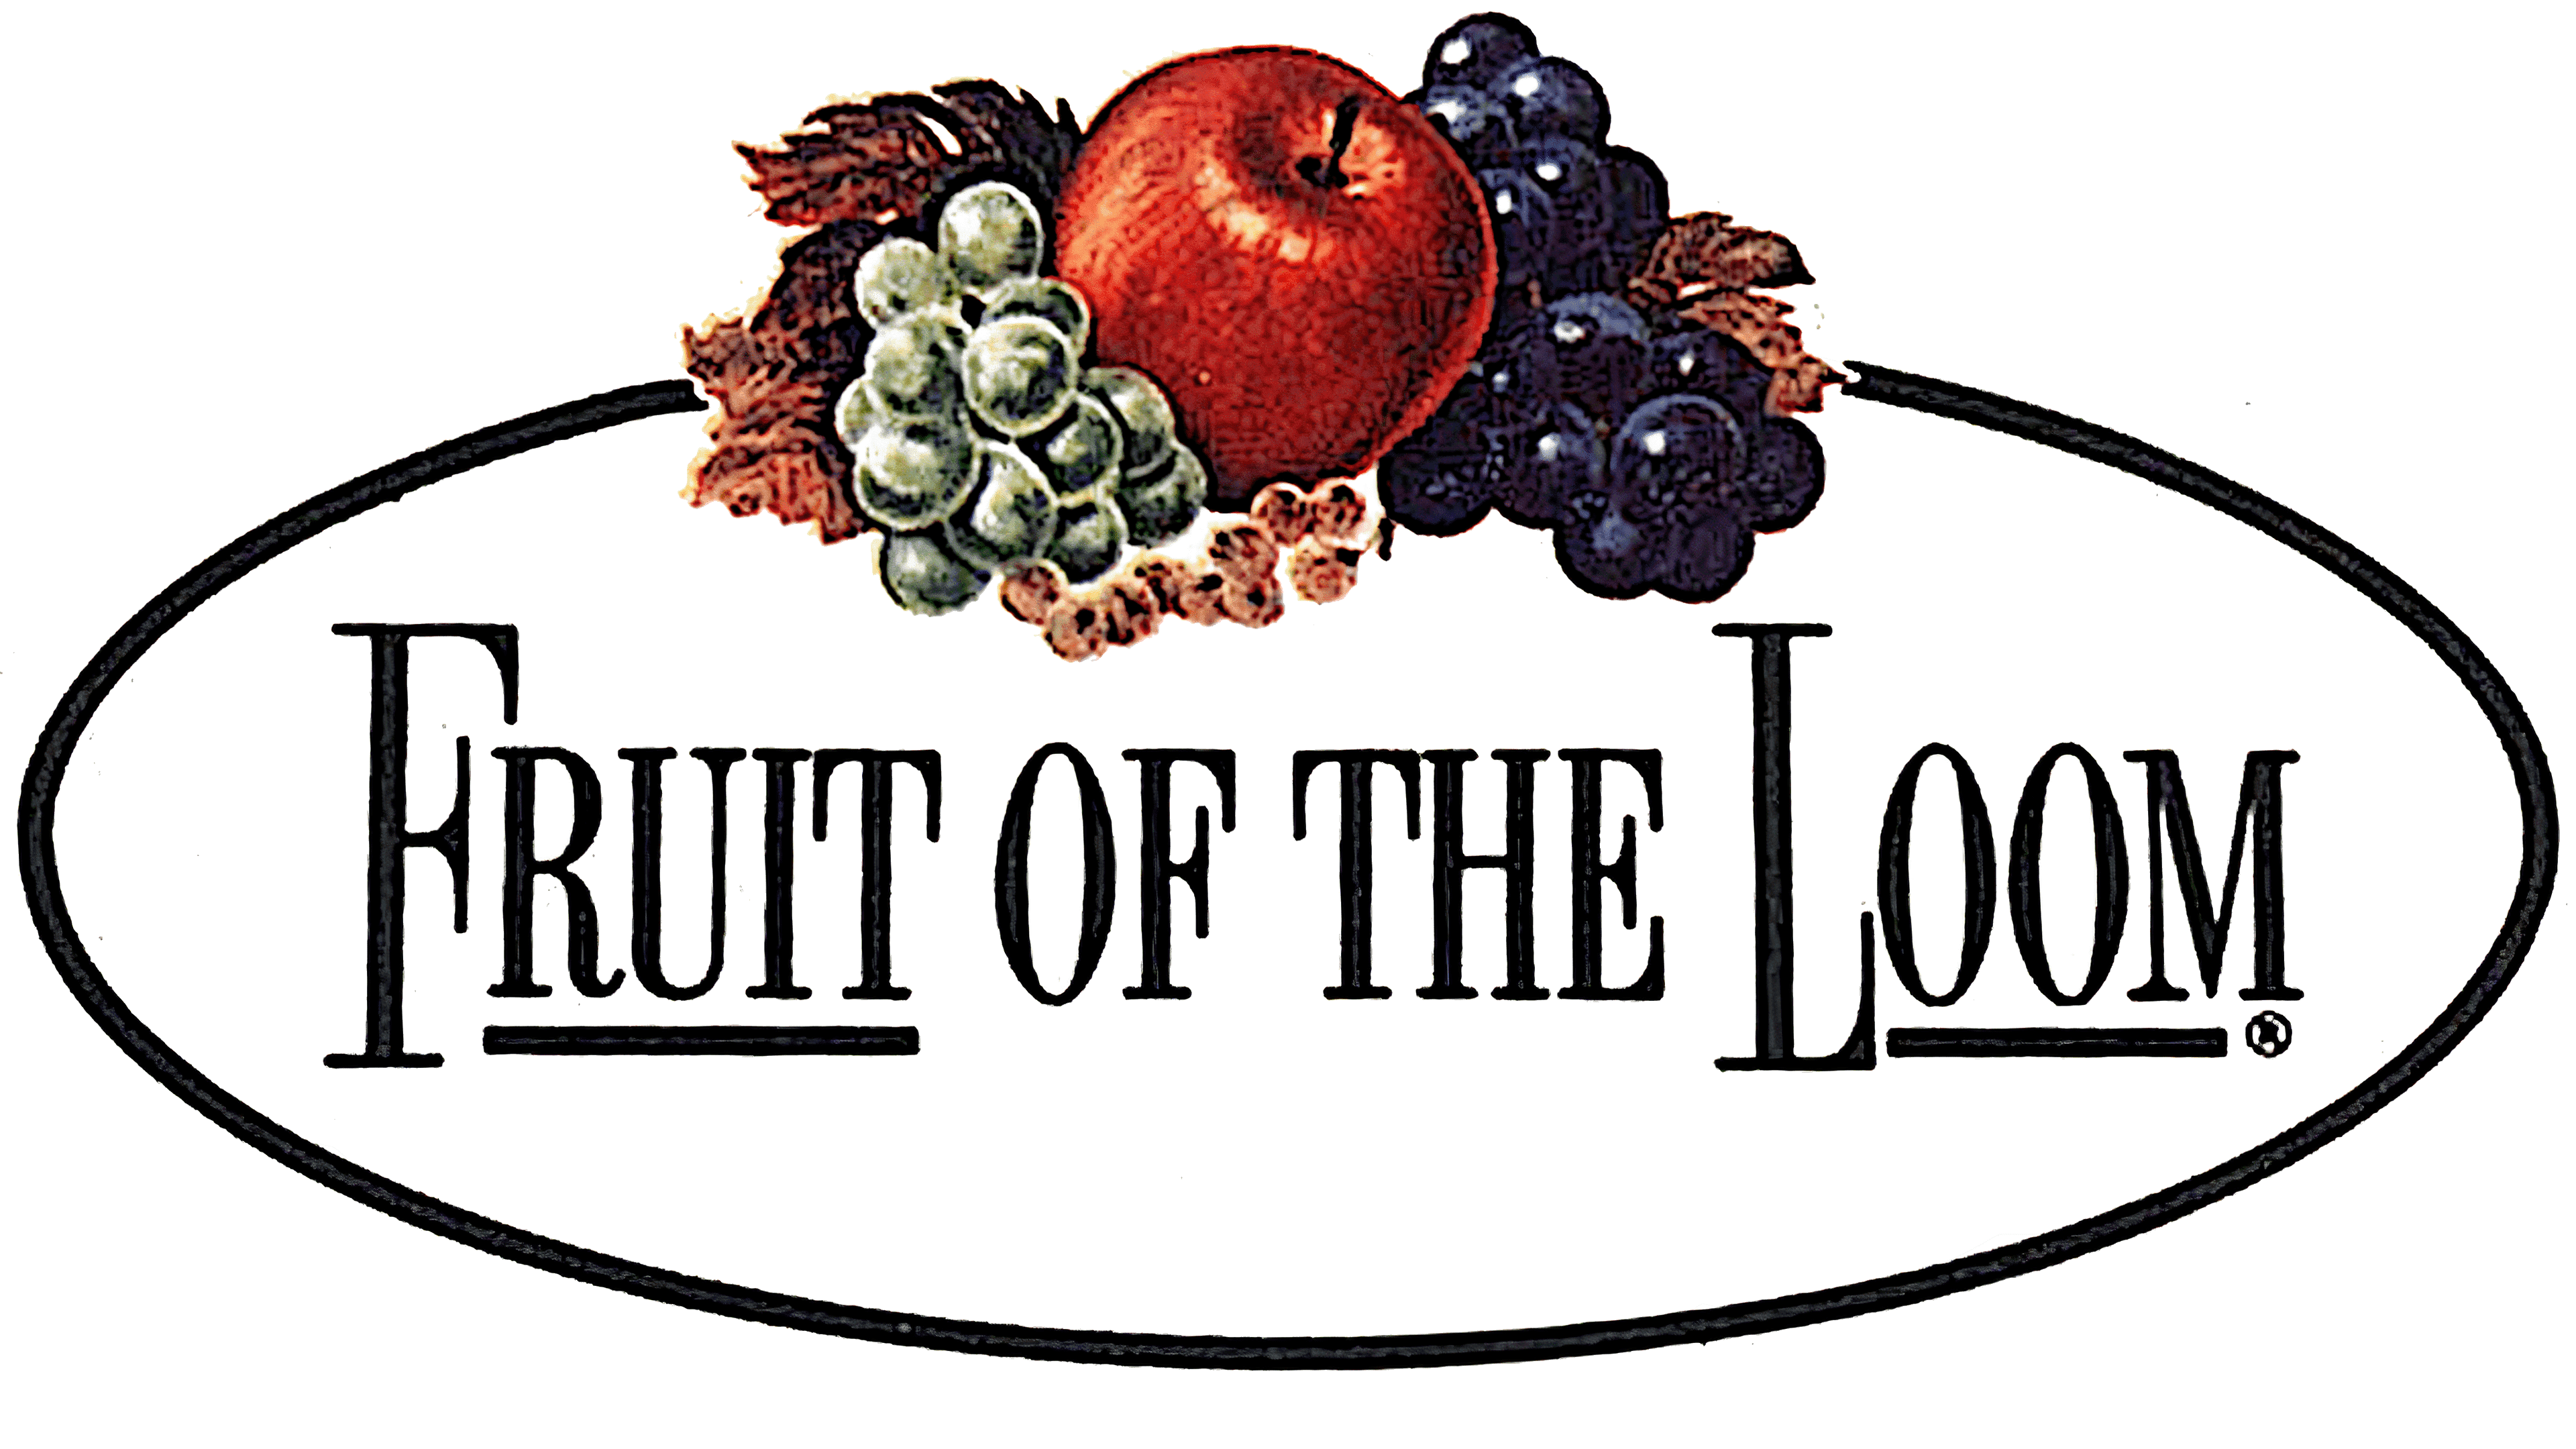 Original Fruit of the Loom logo